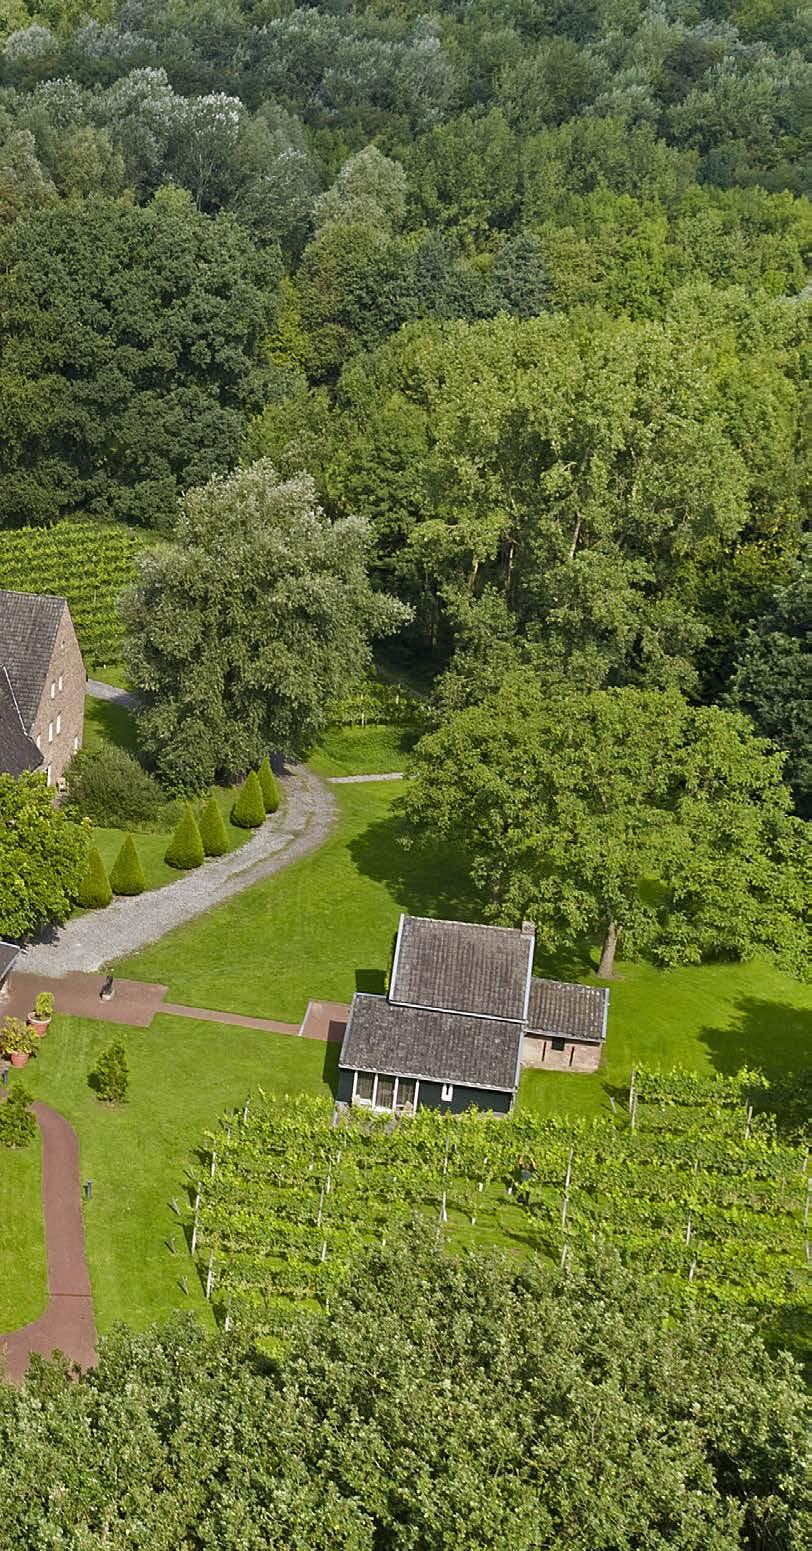 eine elegante location für hochzeiten Am Rande des wunderschönen Strijthagerbeek-Tals, in mitten der Natur liegt das Landgut Winselerhof, eine einzigartige Hochzeitslocation mit historischem Ambiente